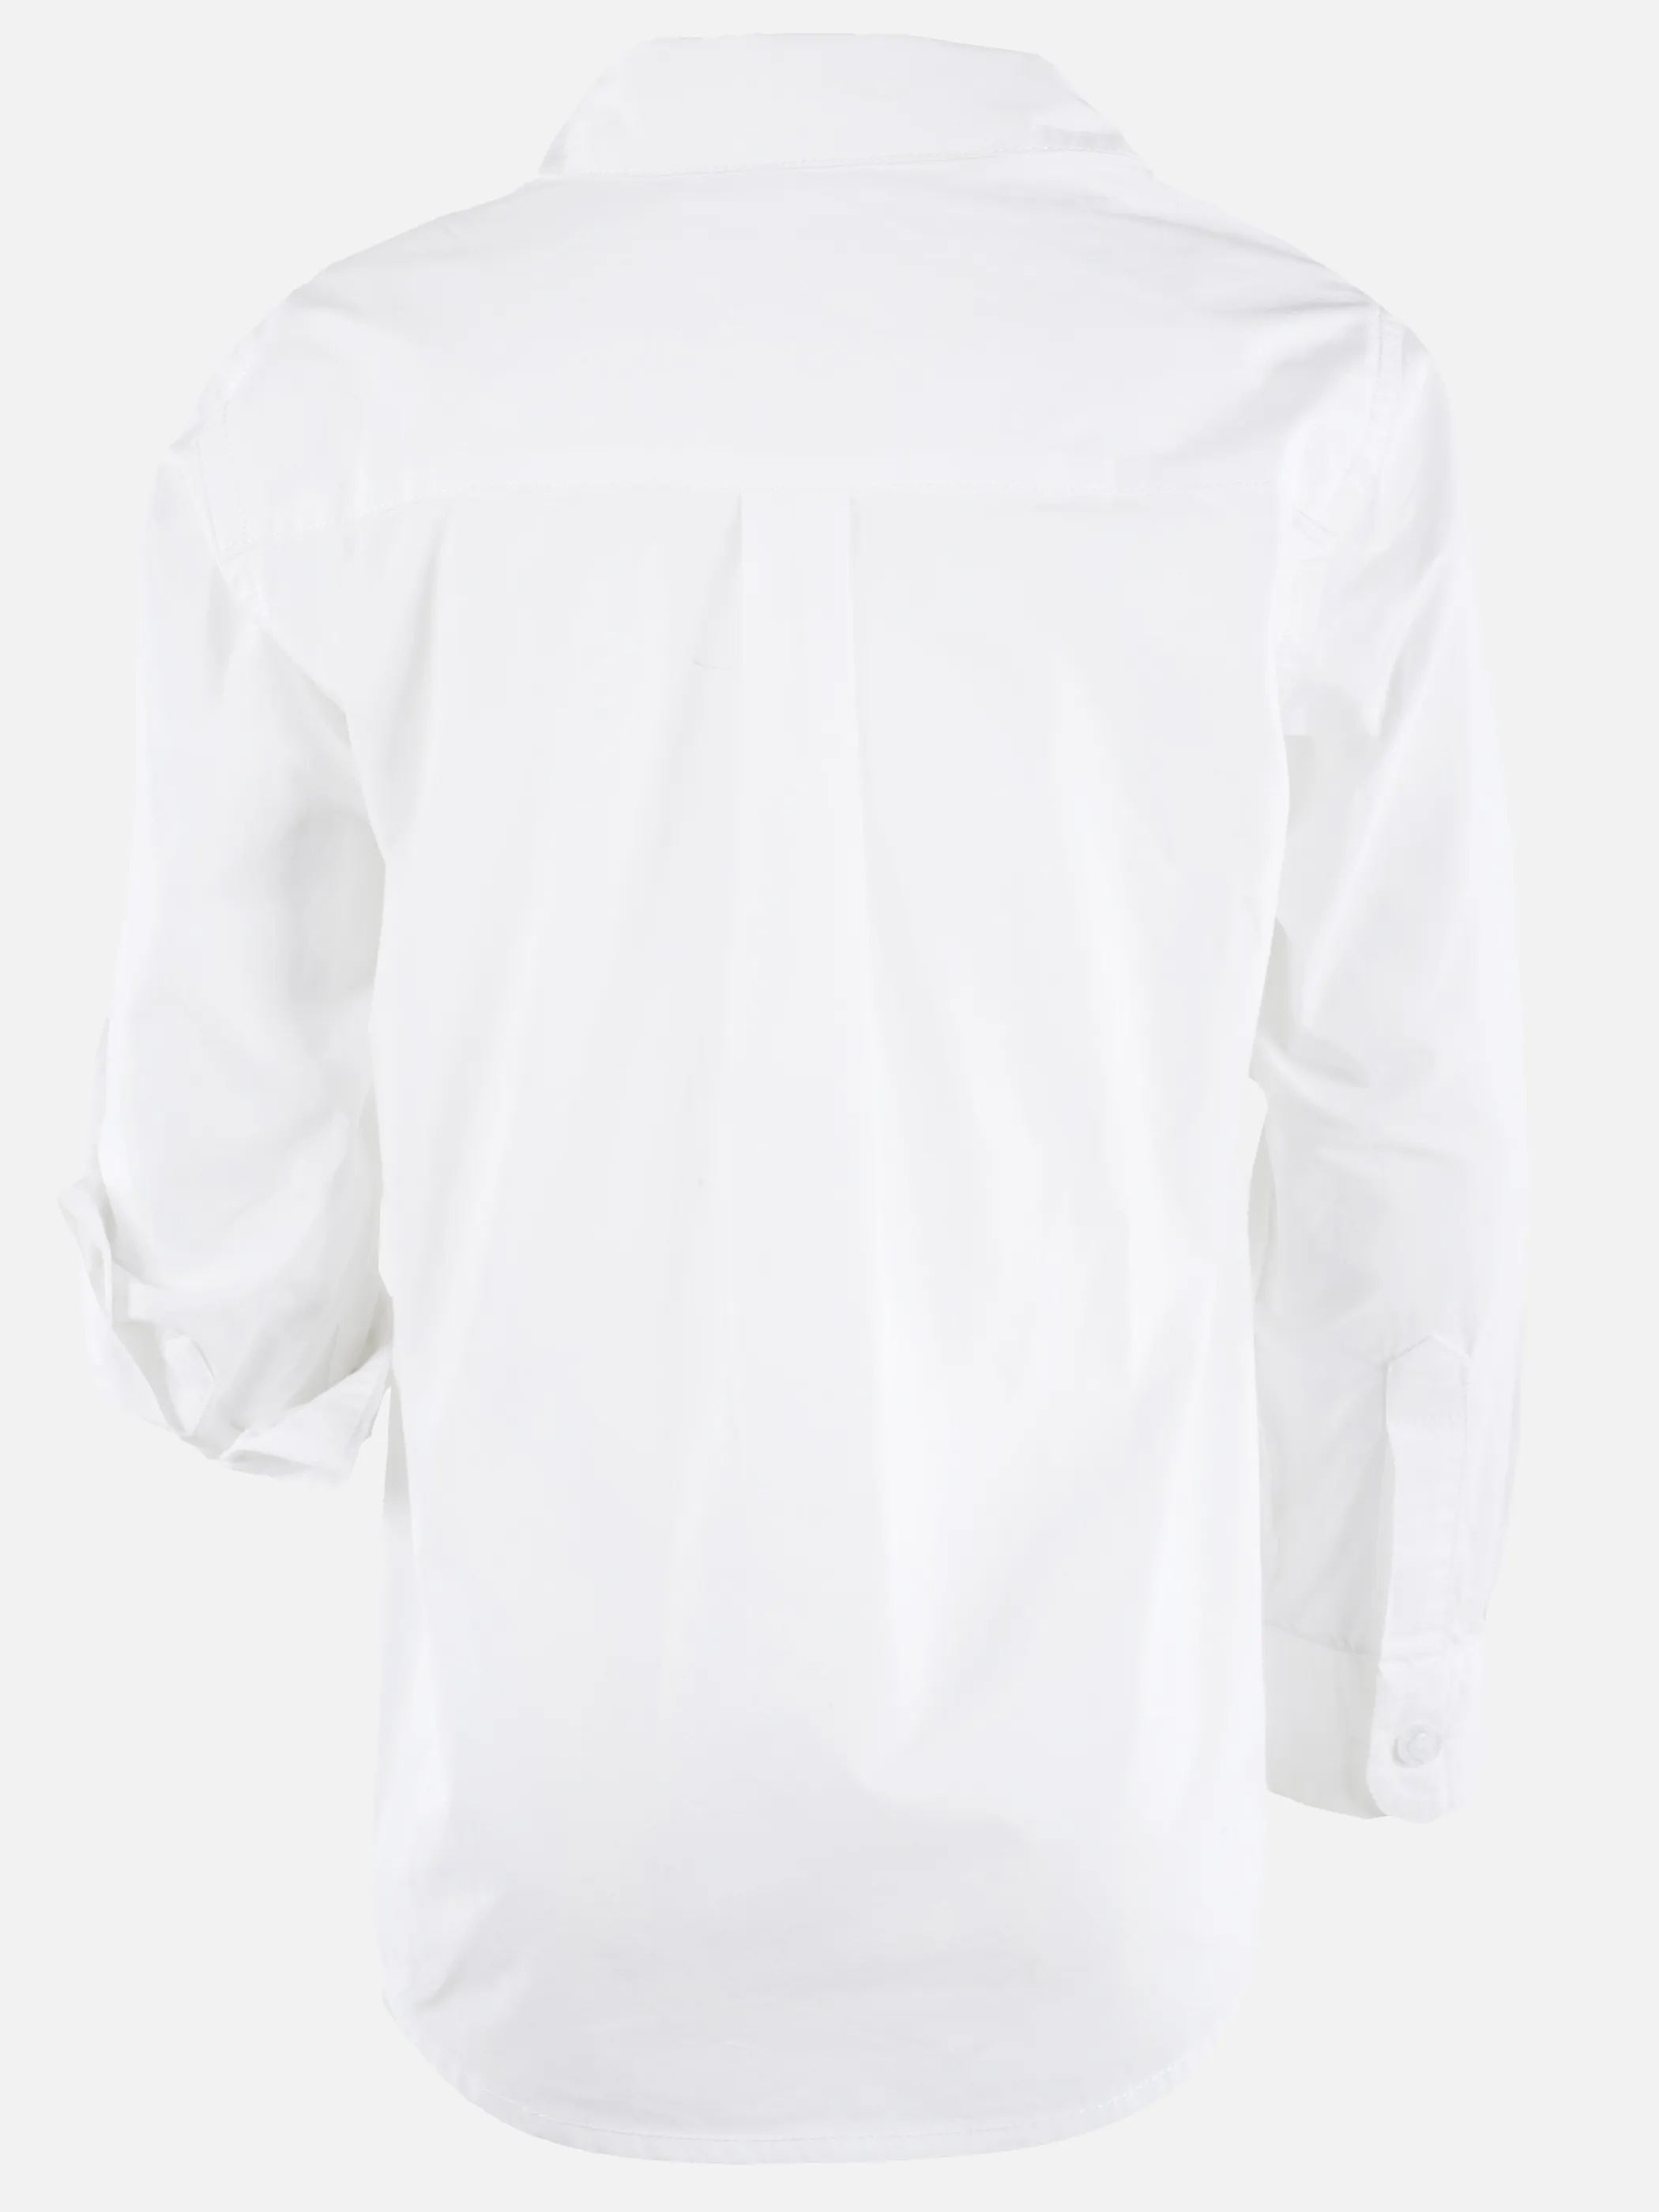 Stop + Go KJ Langarm Hemd mit kleiner Dino Stickerei in weiß Weiß 890567 WEIß 2